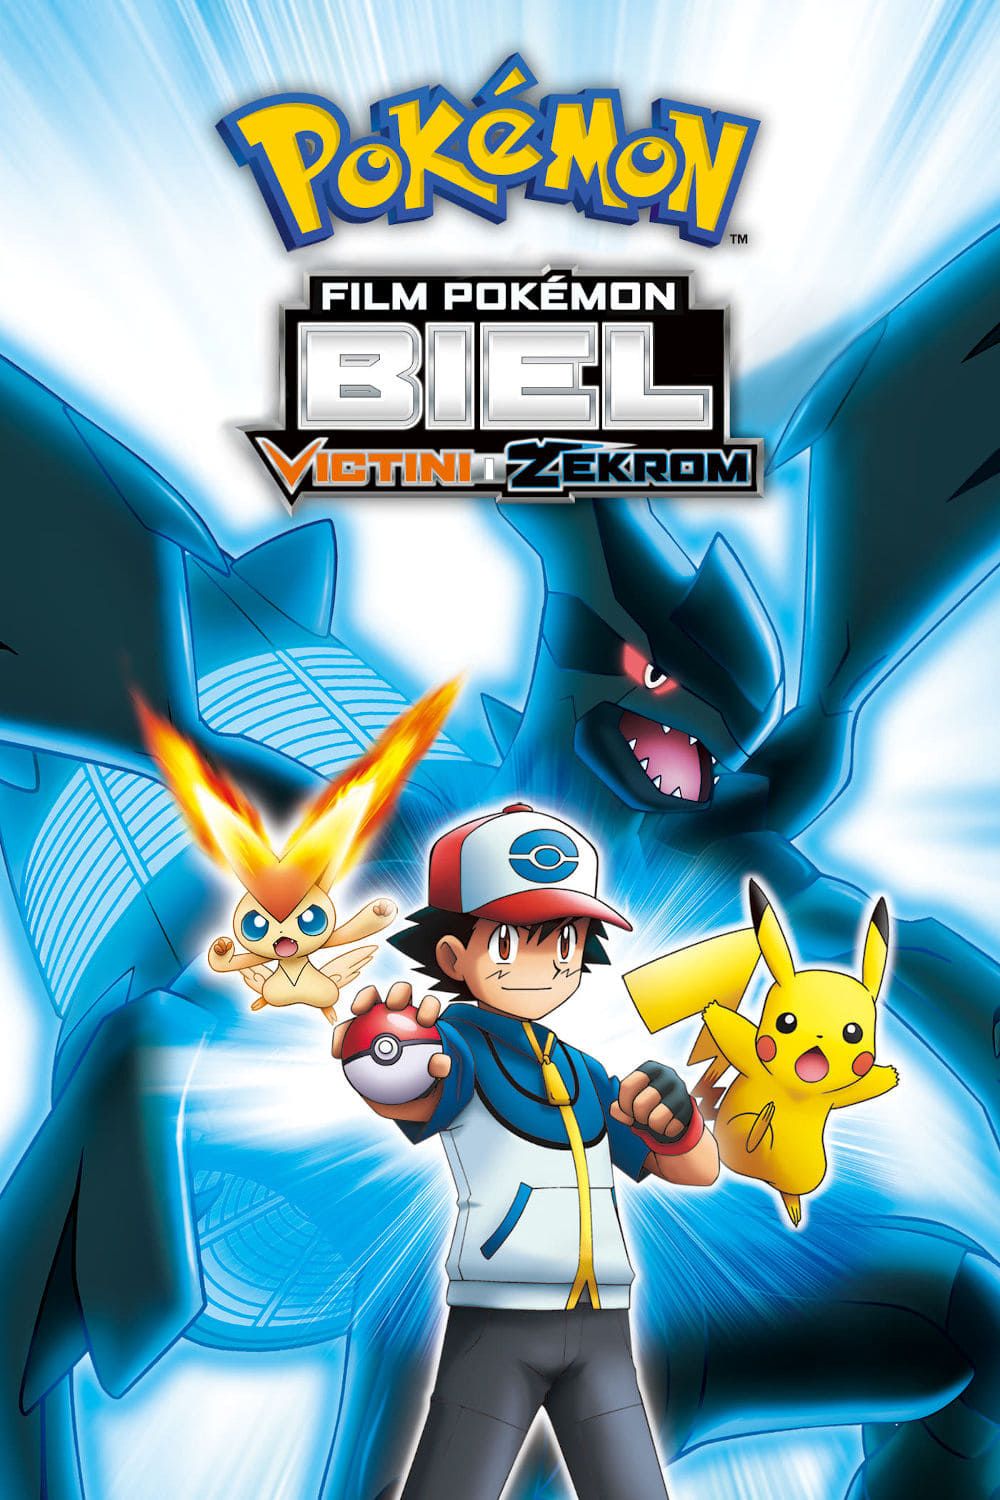 Pokemon the Movie: White - Victini and Zekrom (Dub) (Movie) Update